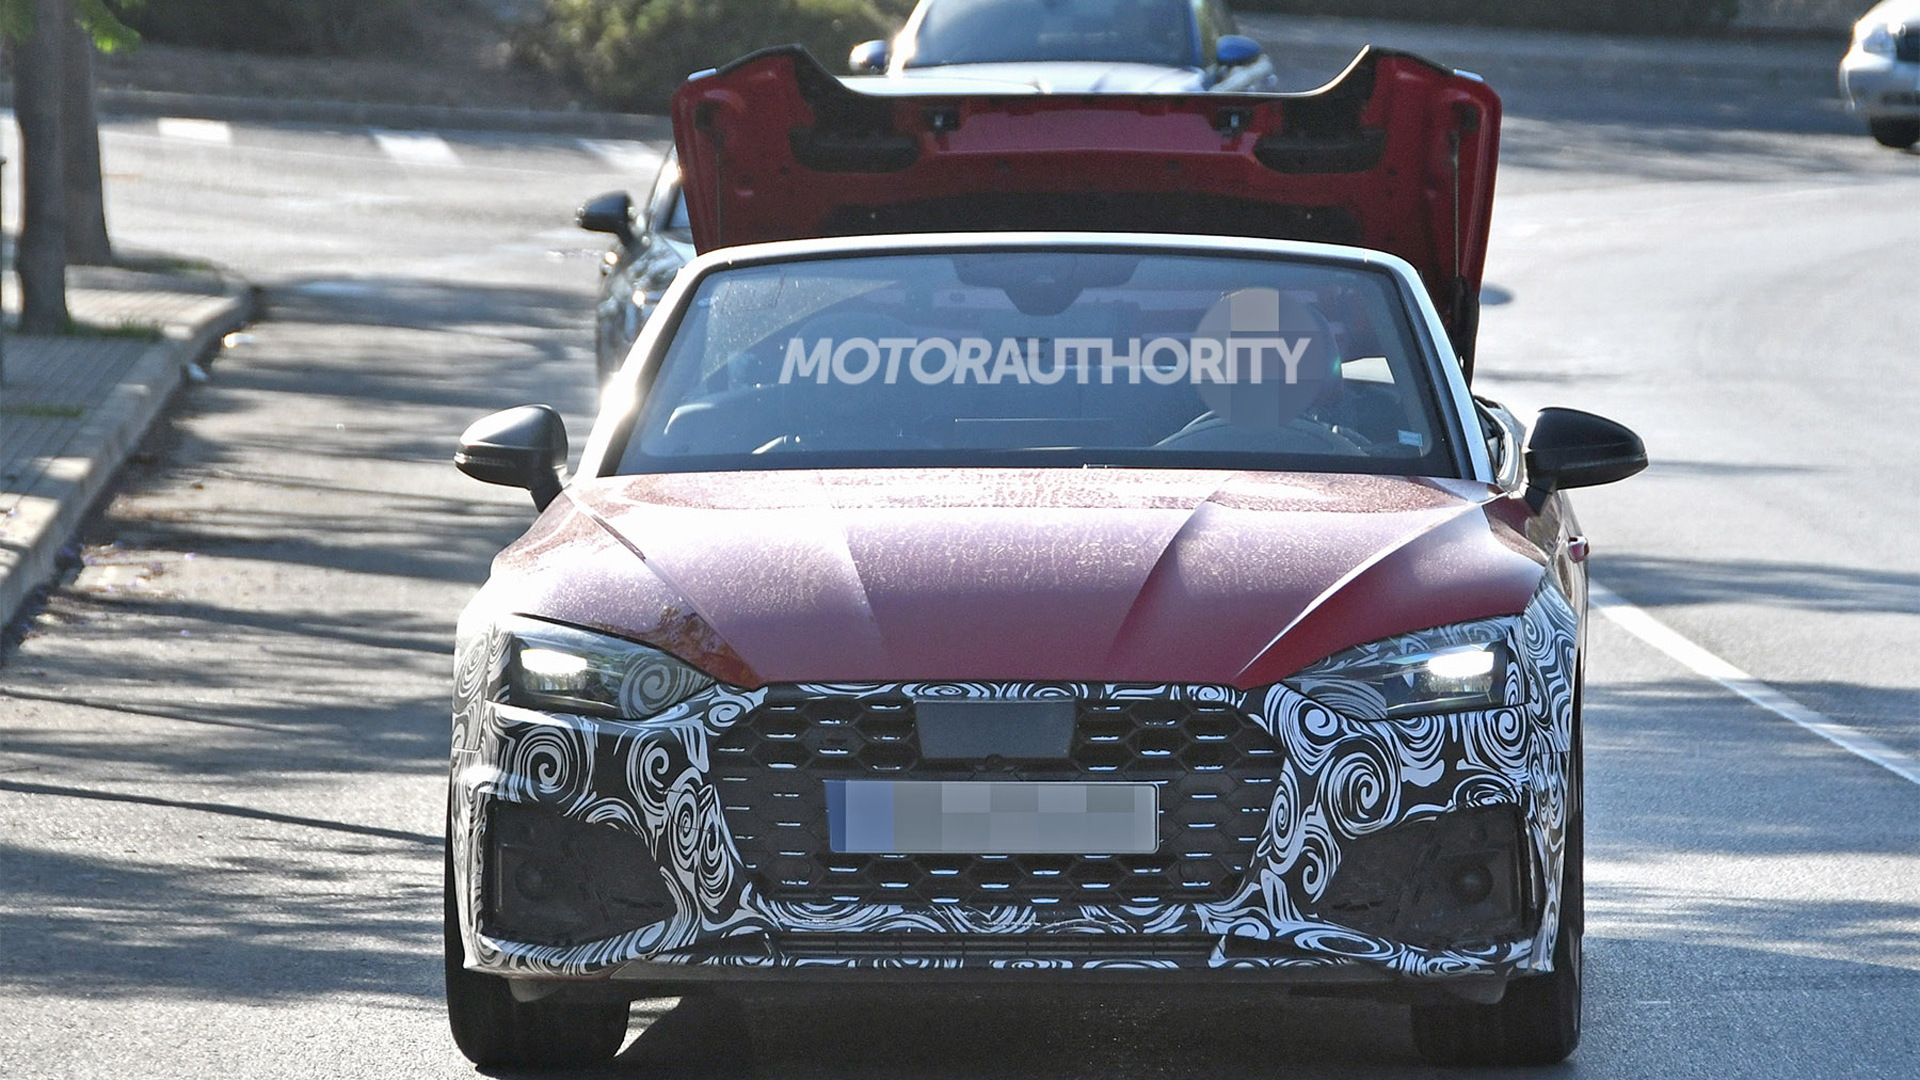 2021 Audi S5 Cabriolet Spy Shots